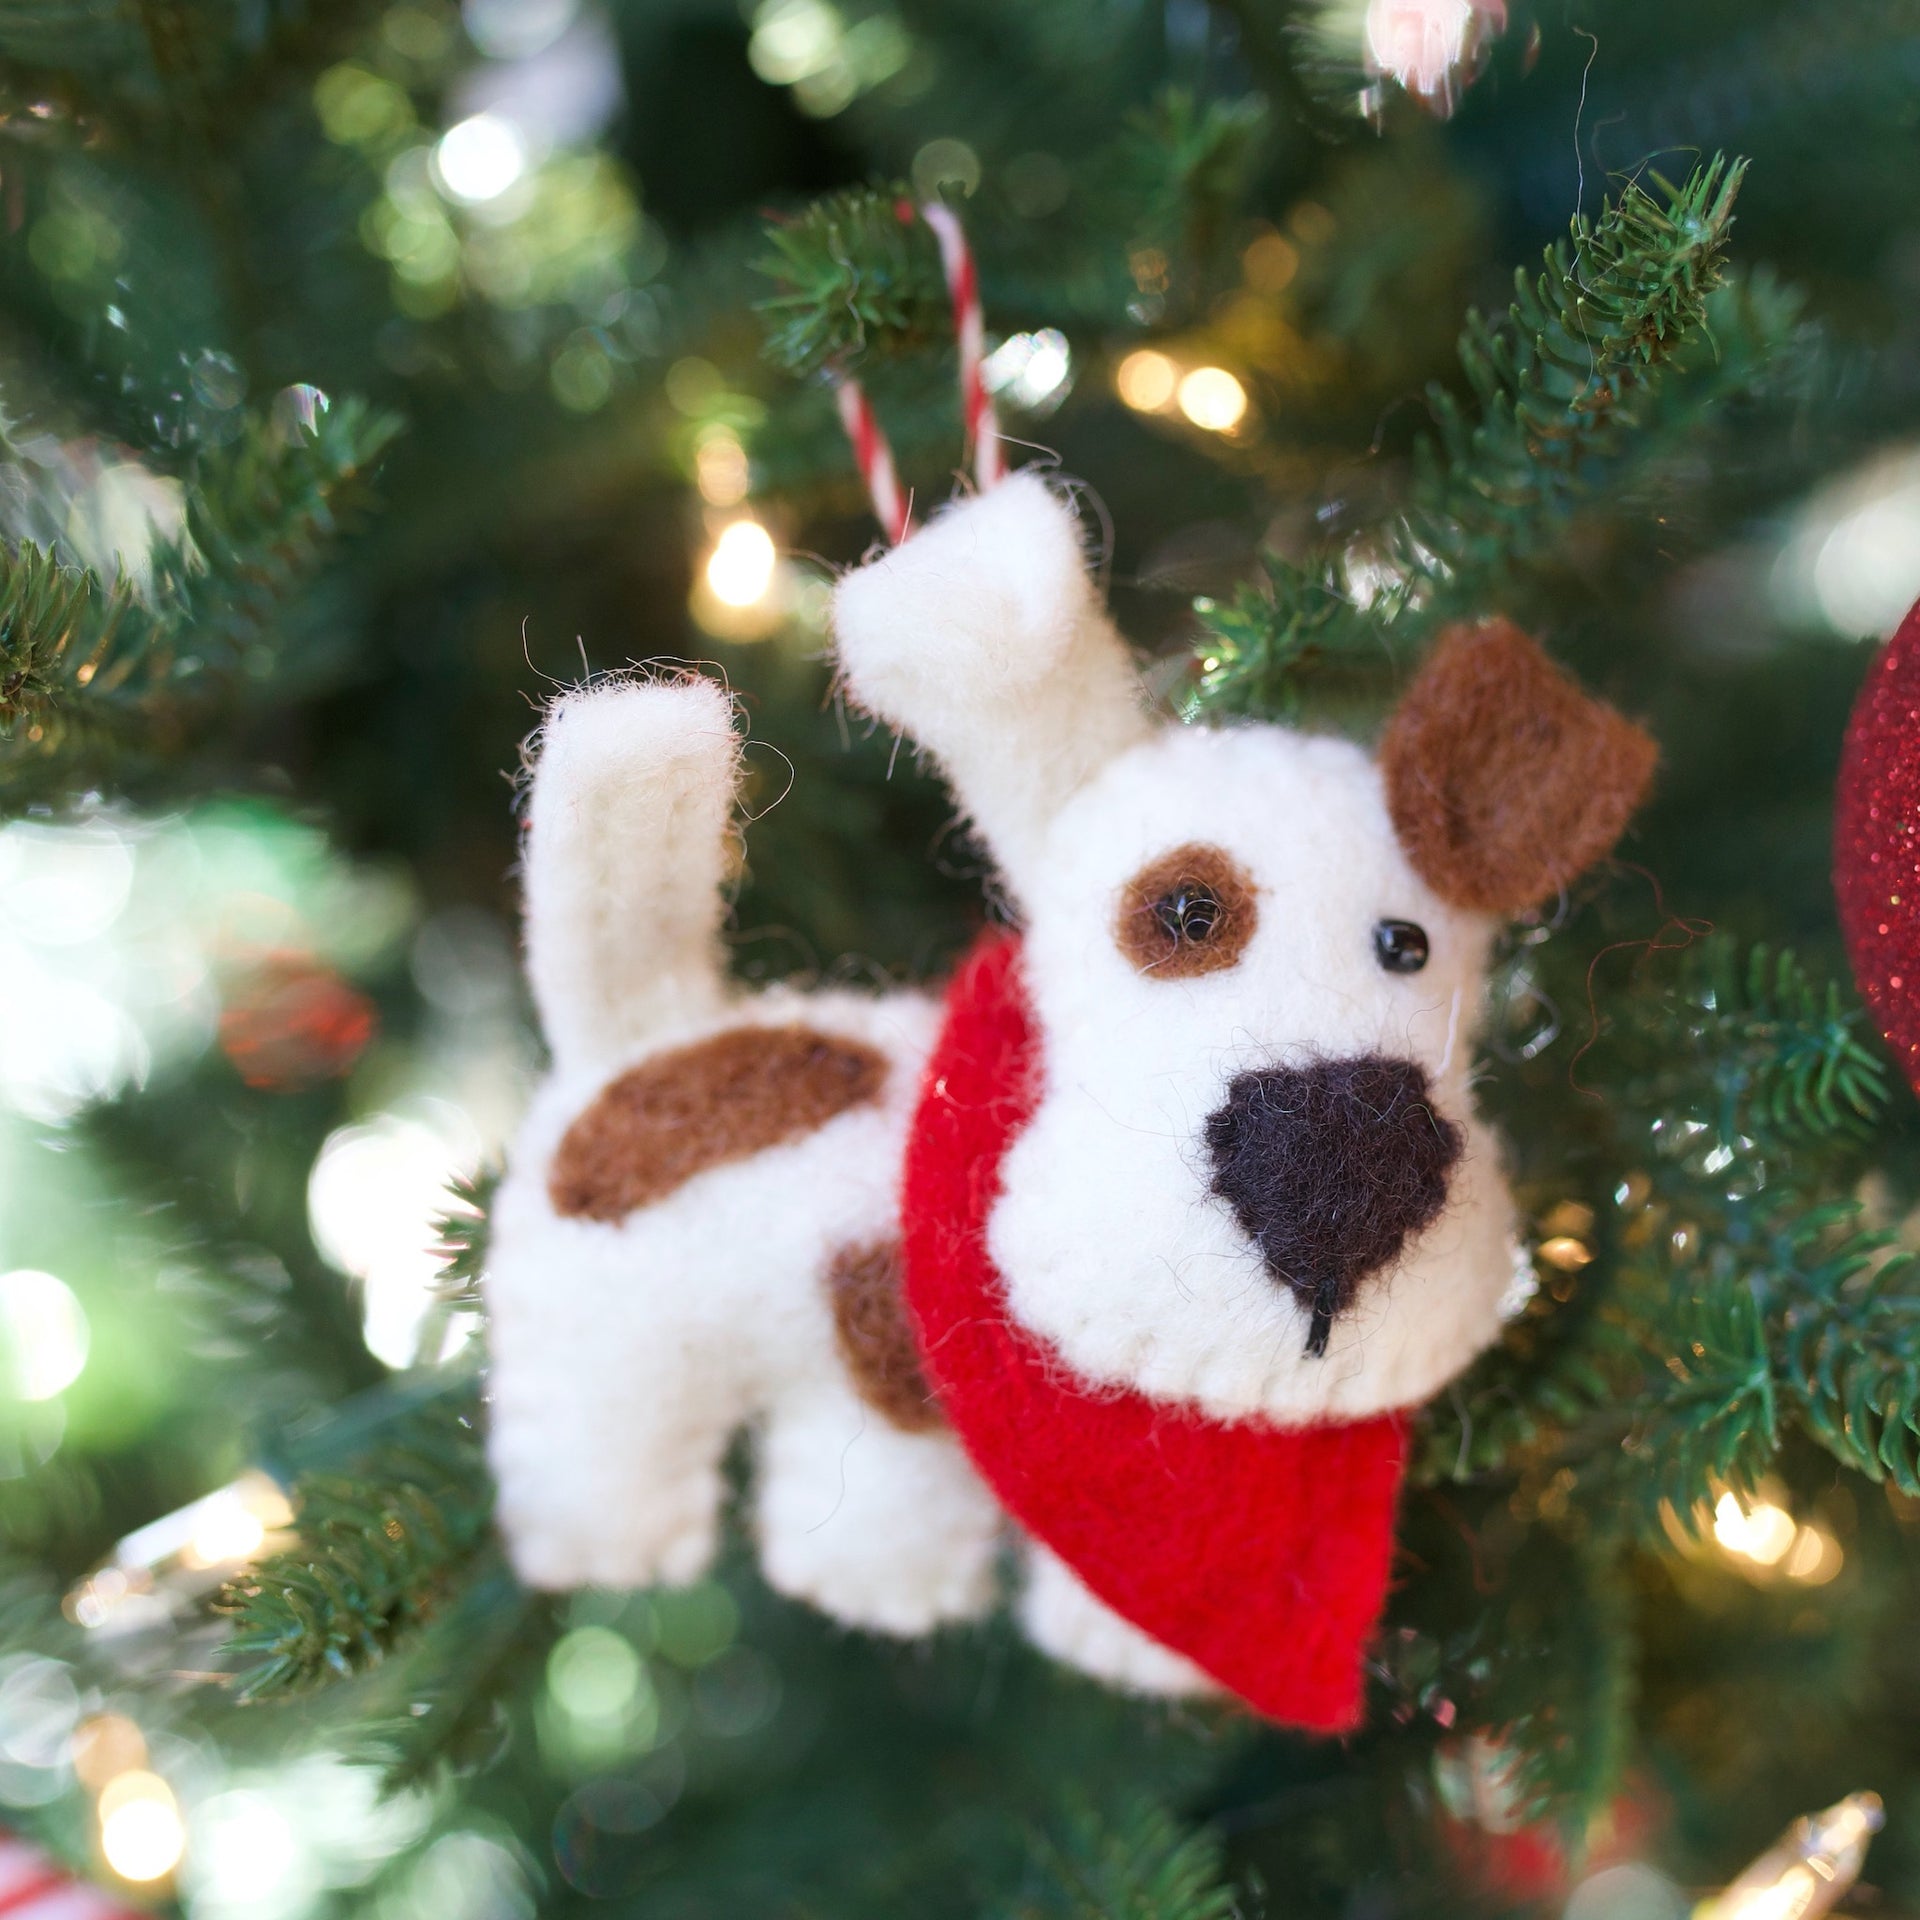 Dog Christmas Ornament, Adorable Christmas Ornament